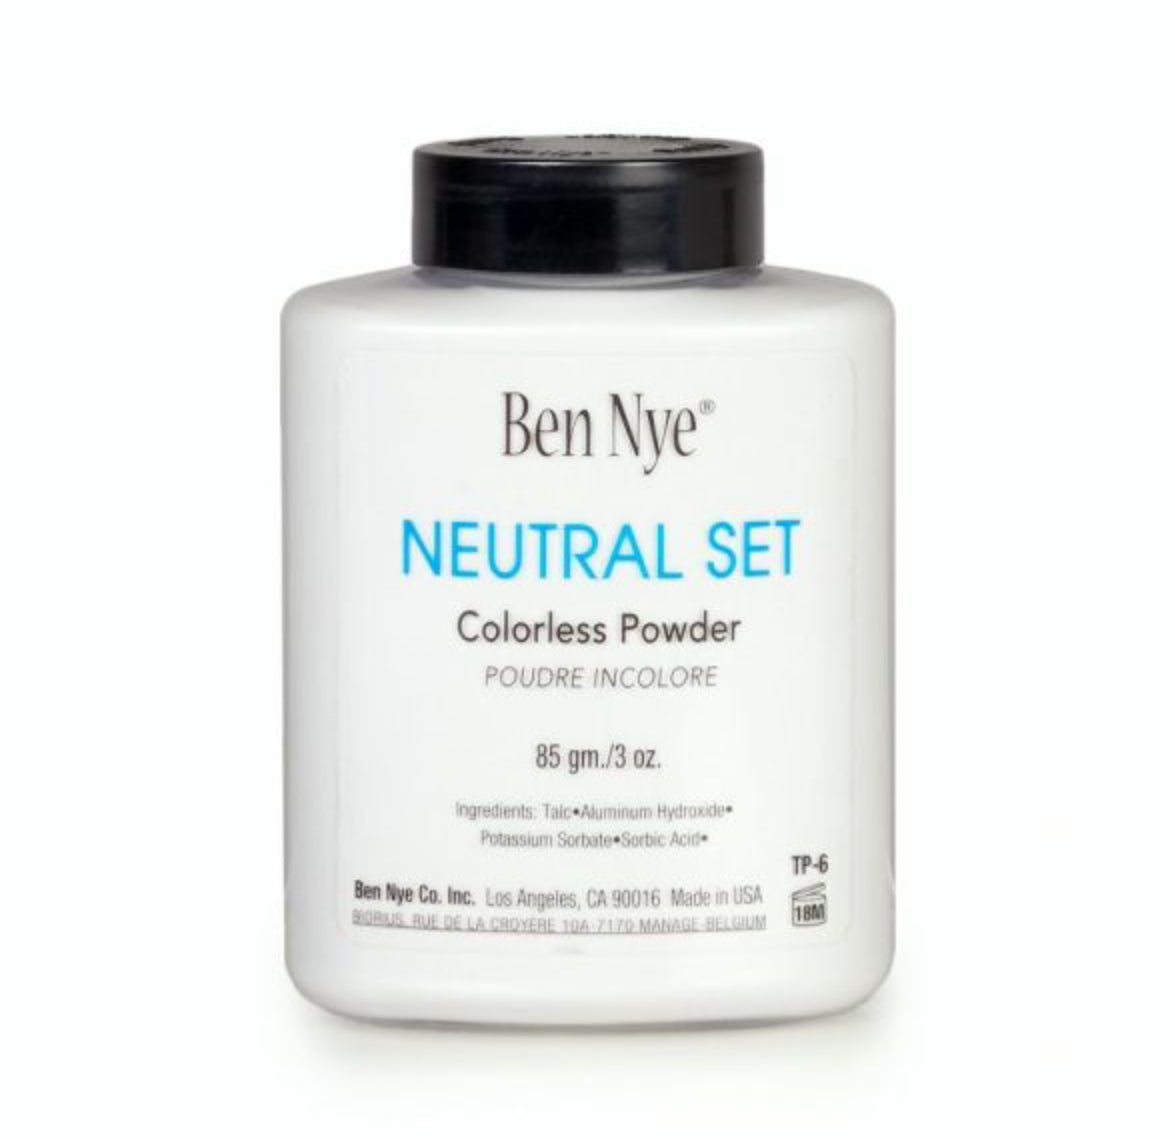 Ben Nye neutral set